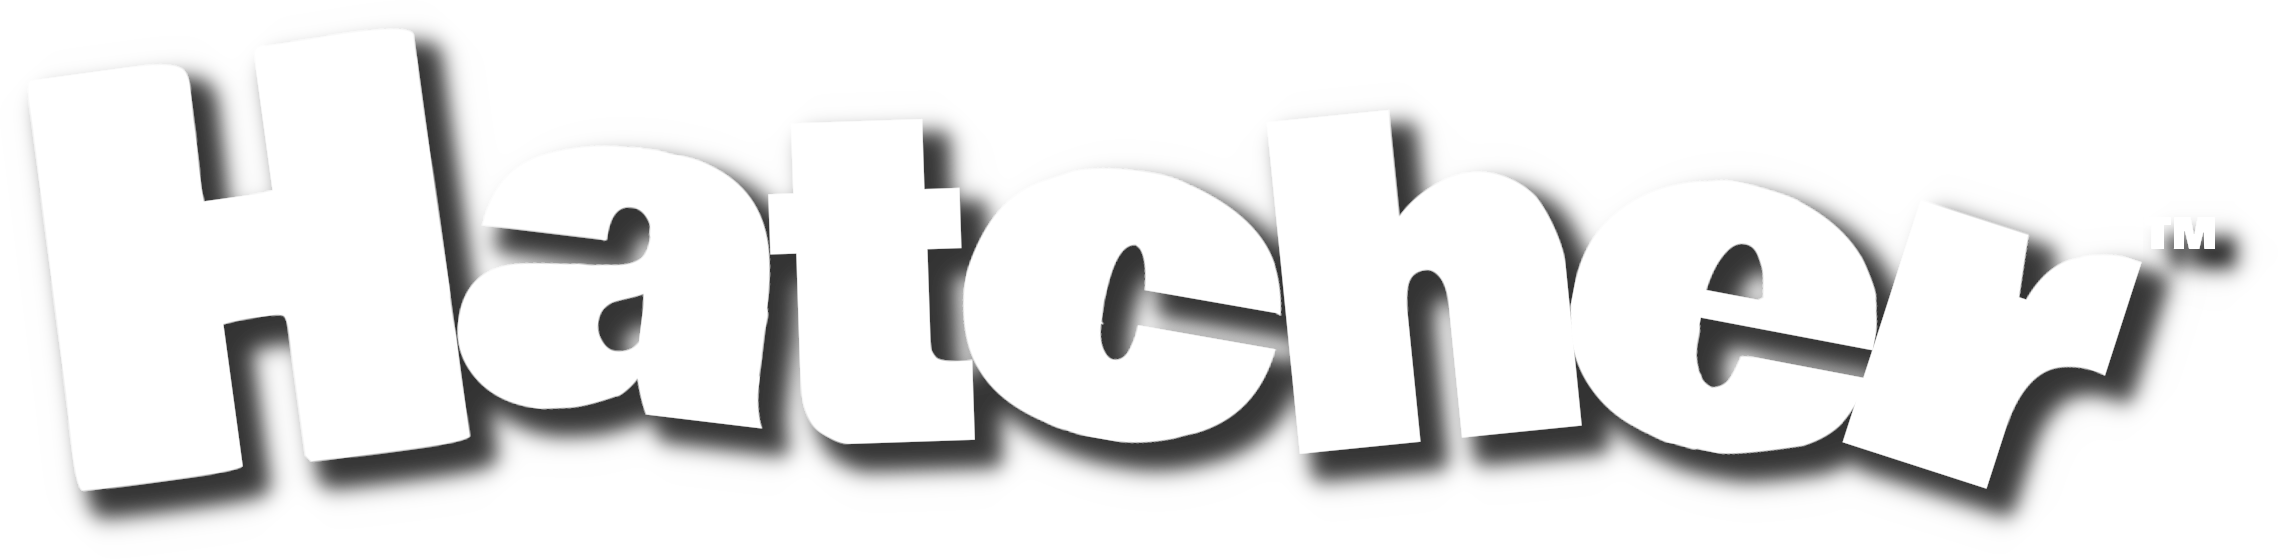 Hatcher Logo